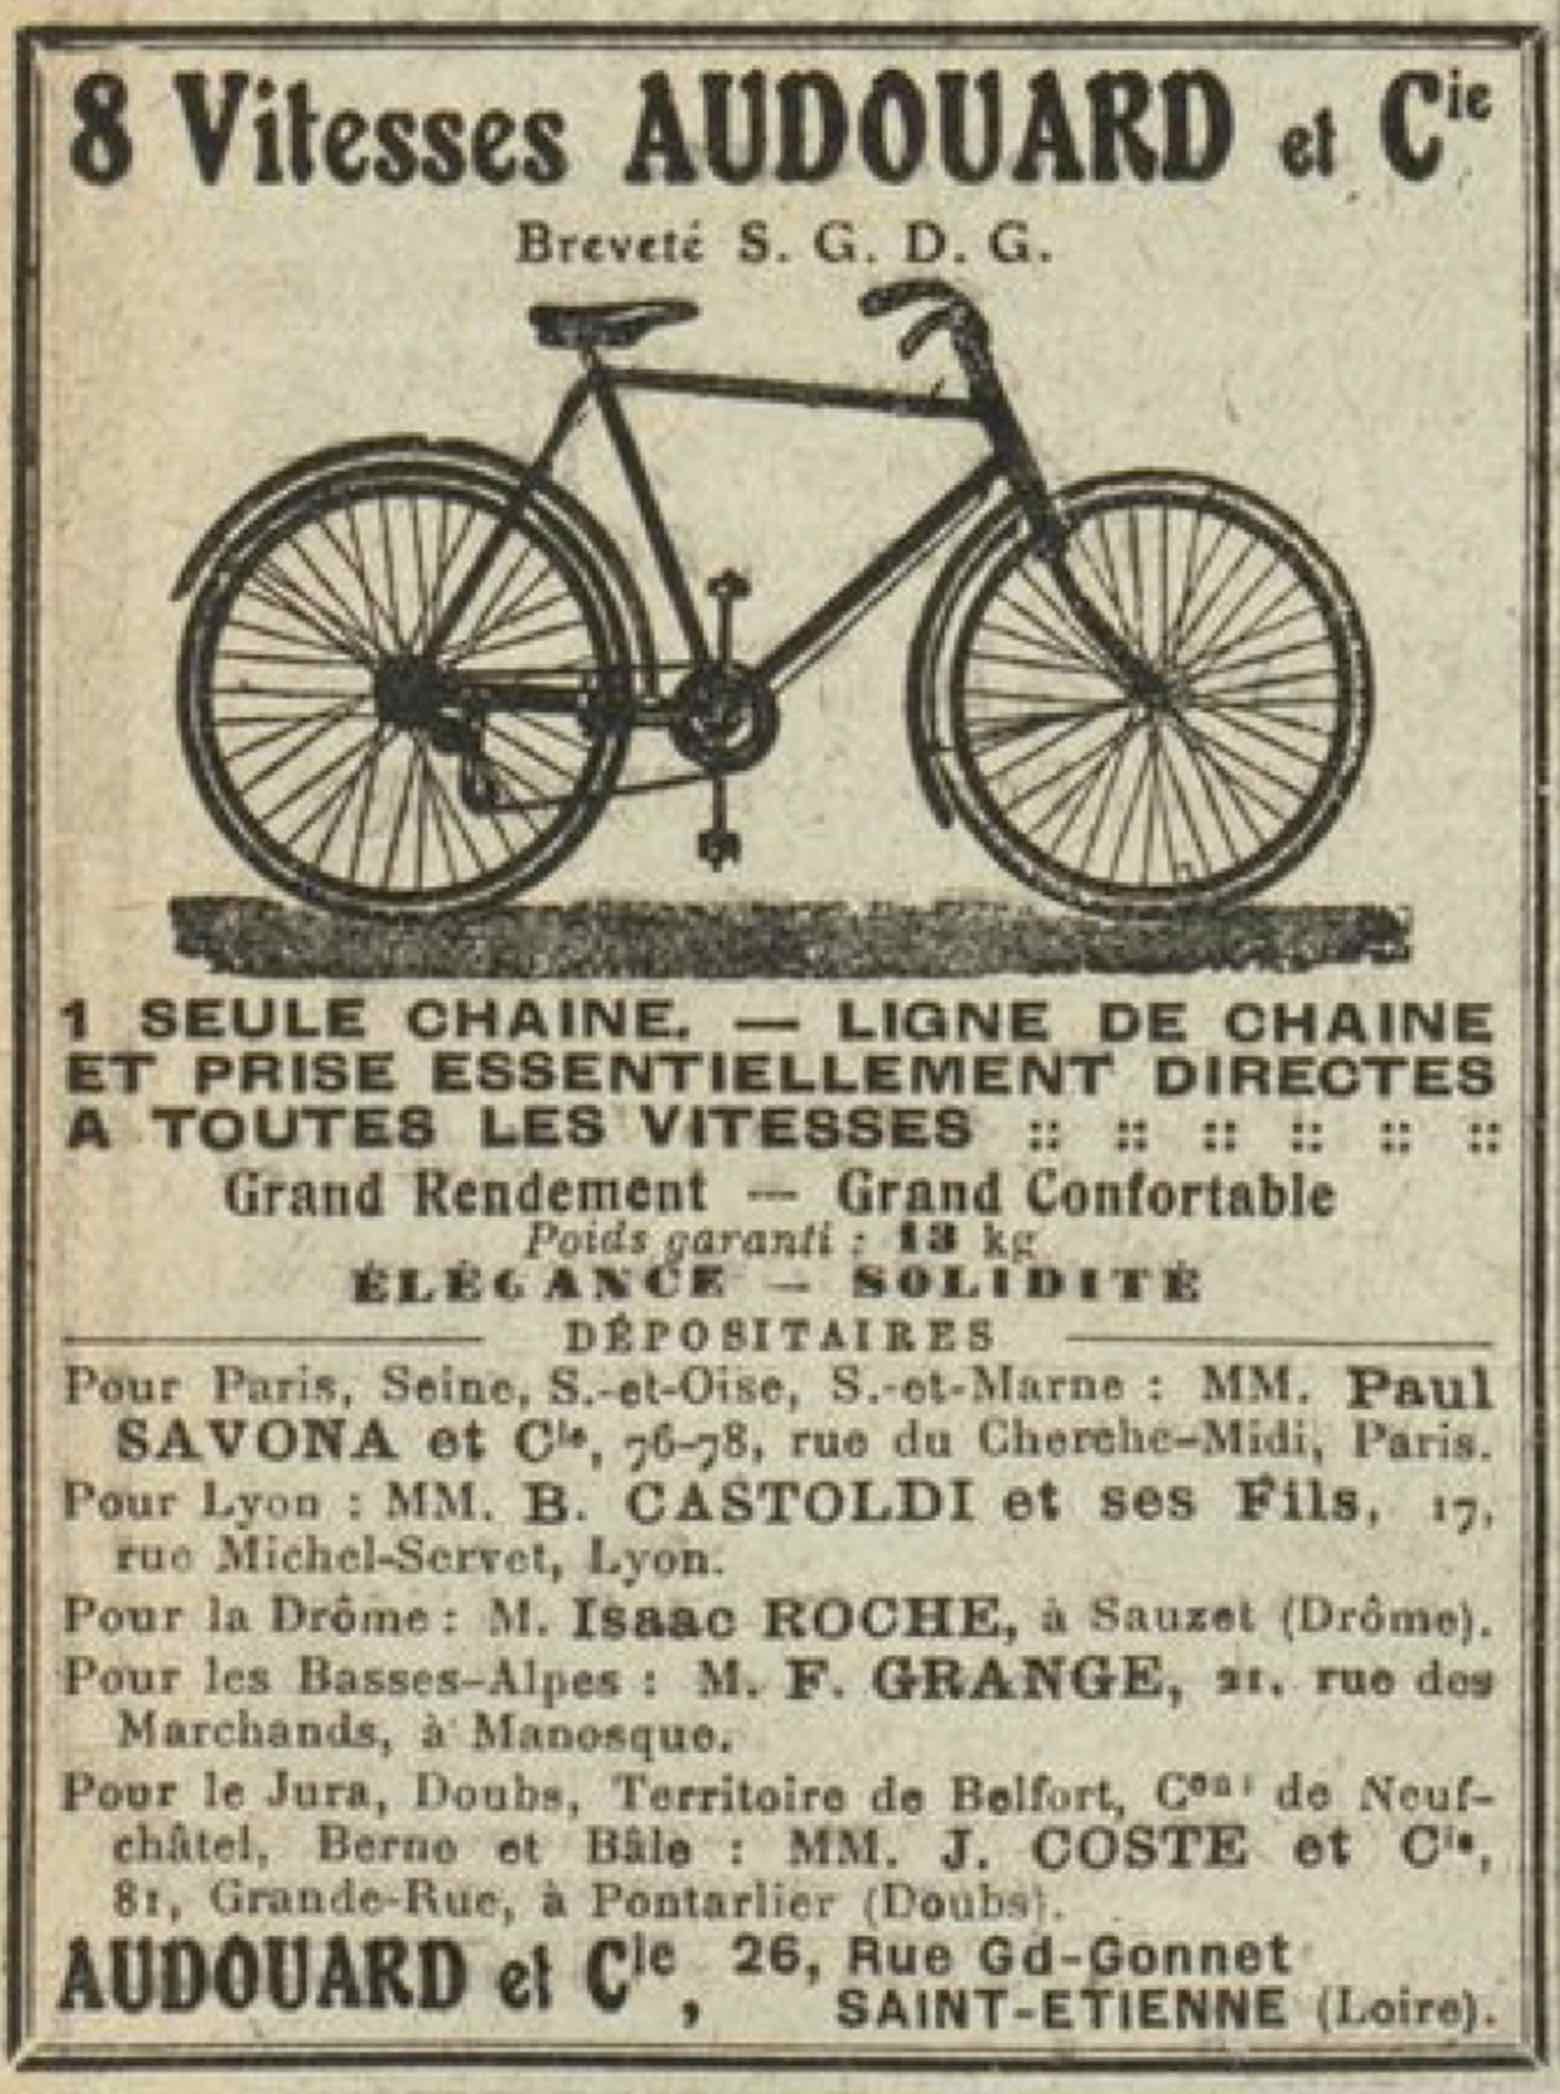 T.C.F. Revue Mensuelle August 1913 - Audouard advert main image